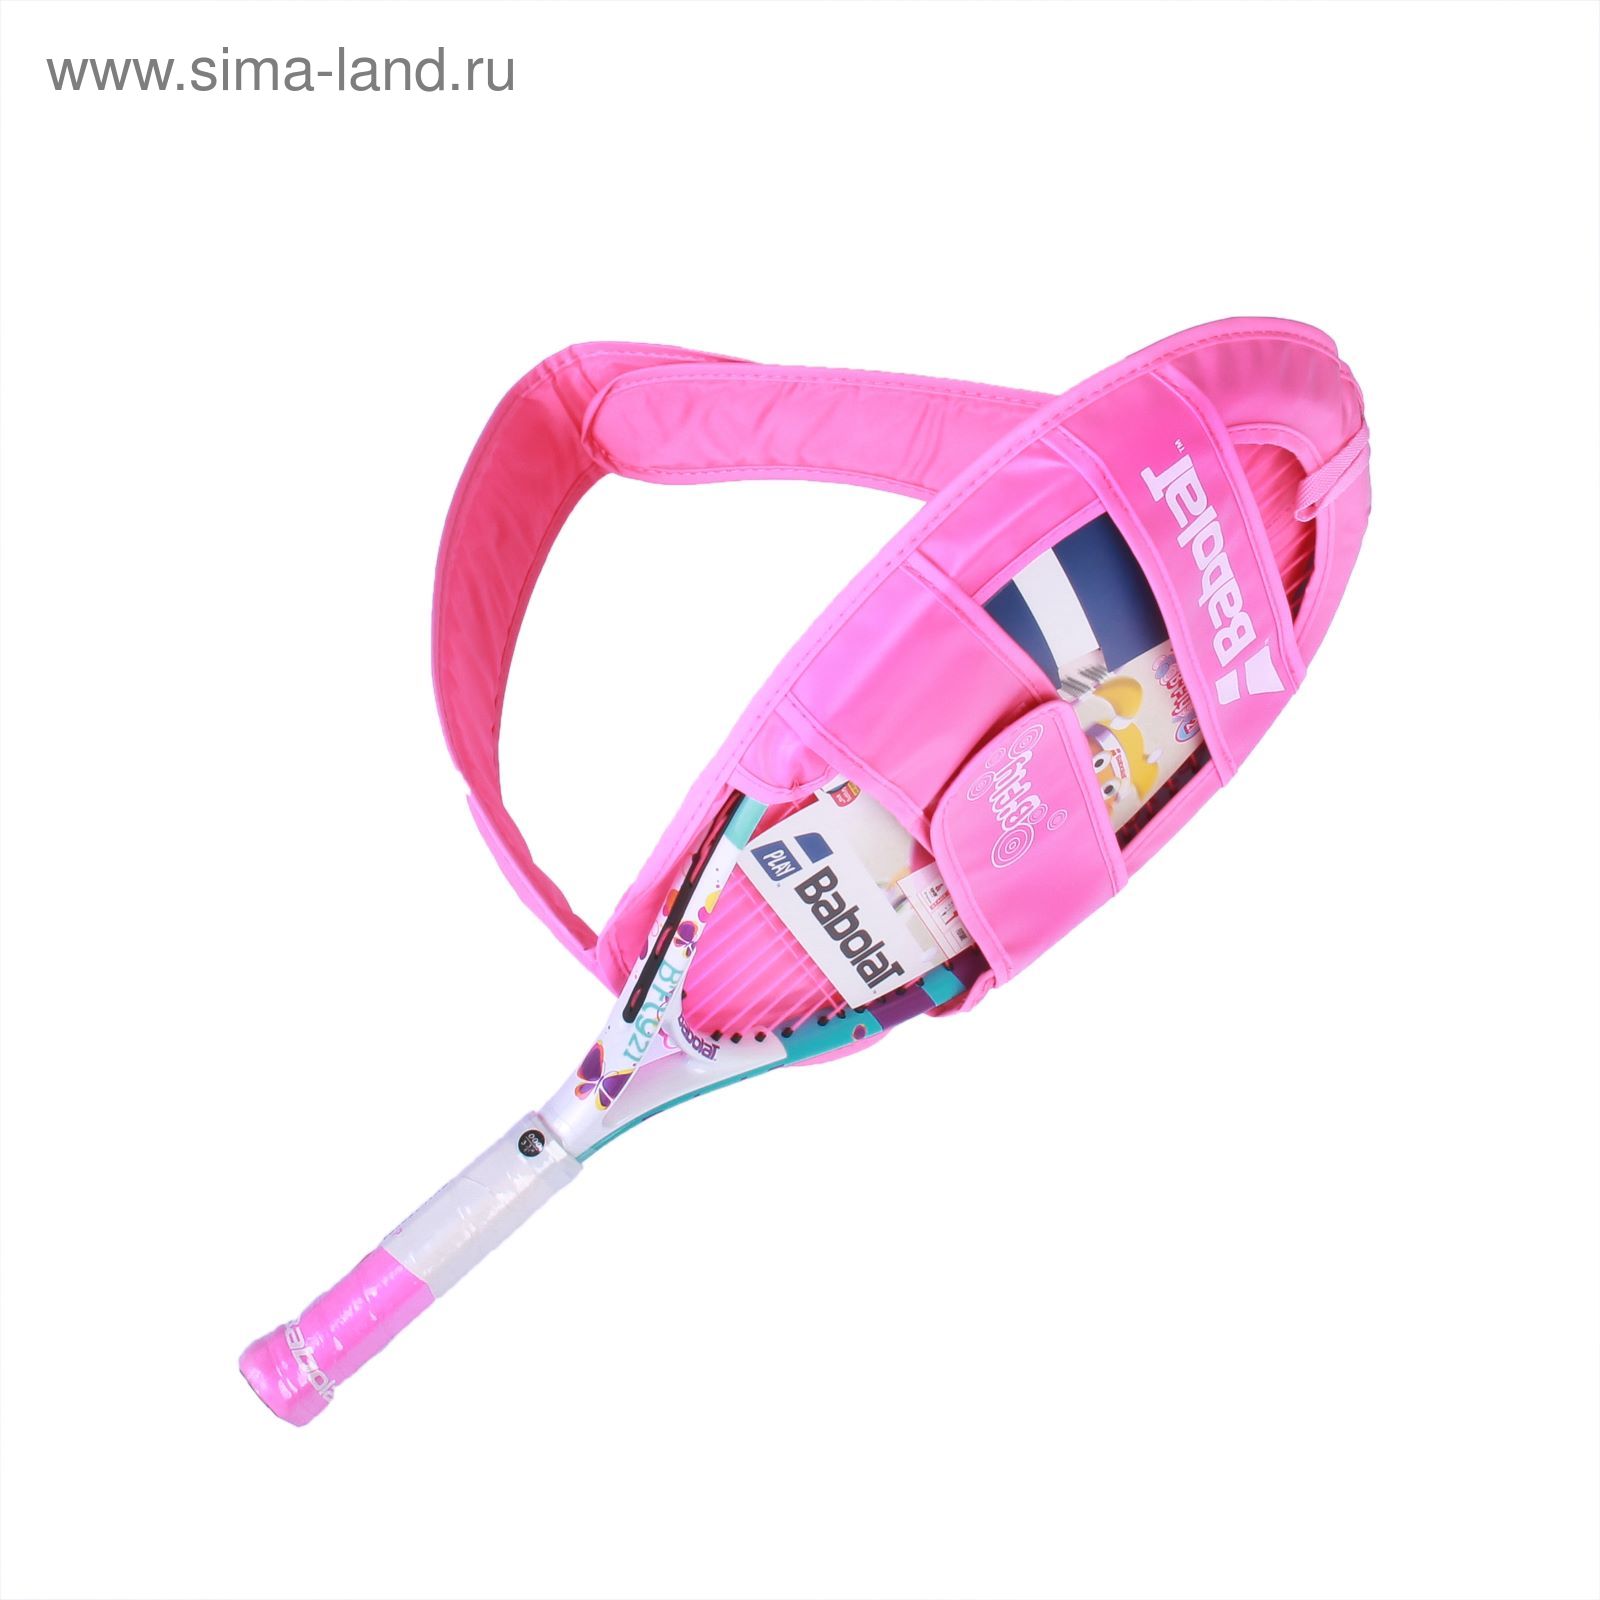 Теннисная ракетка B'FLY 21, ручка 000, цвет розовый